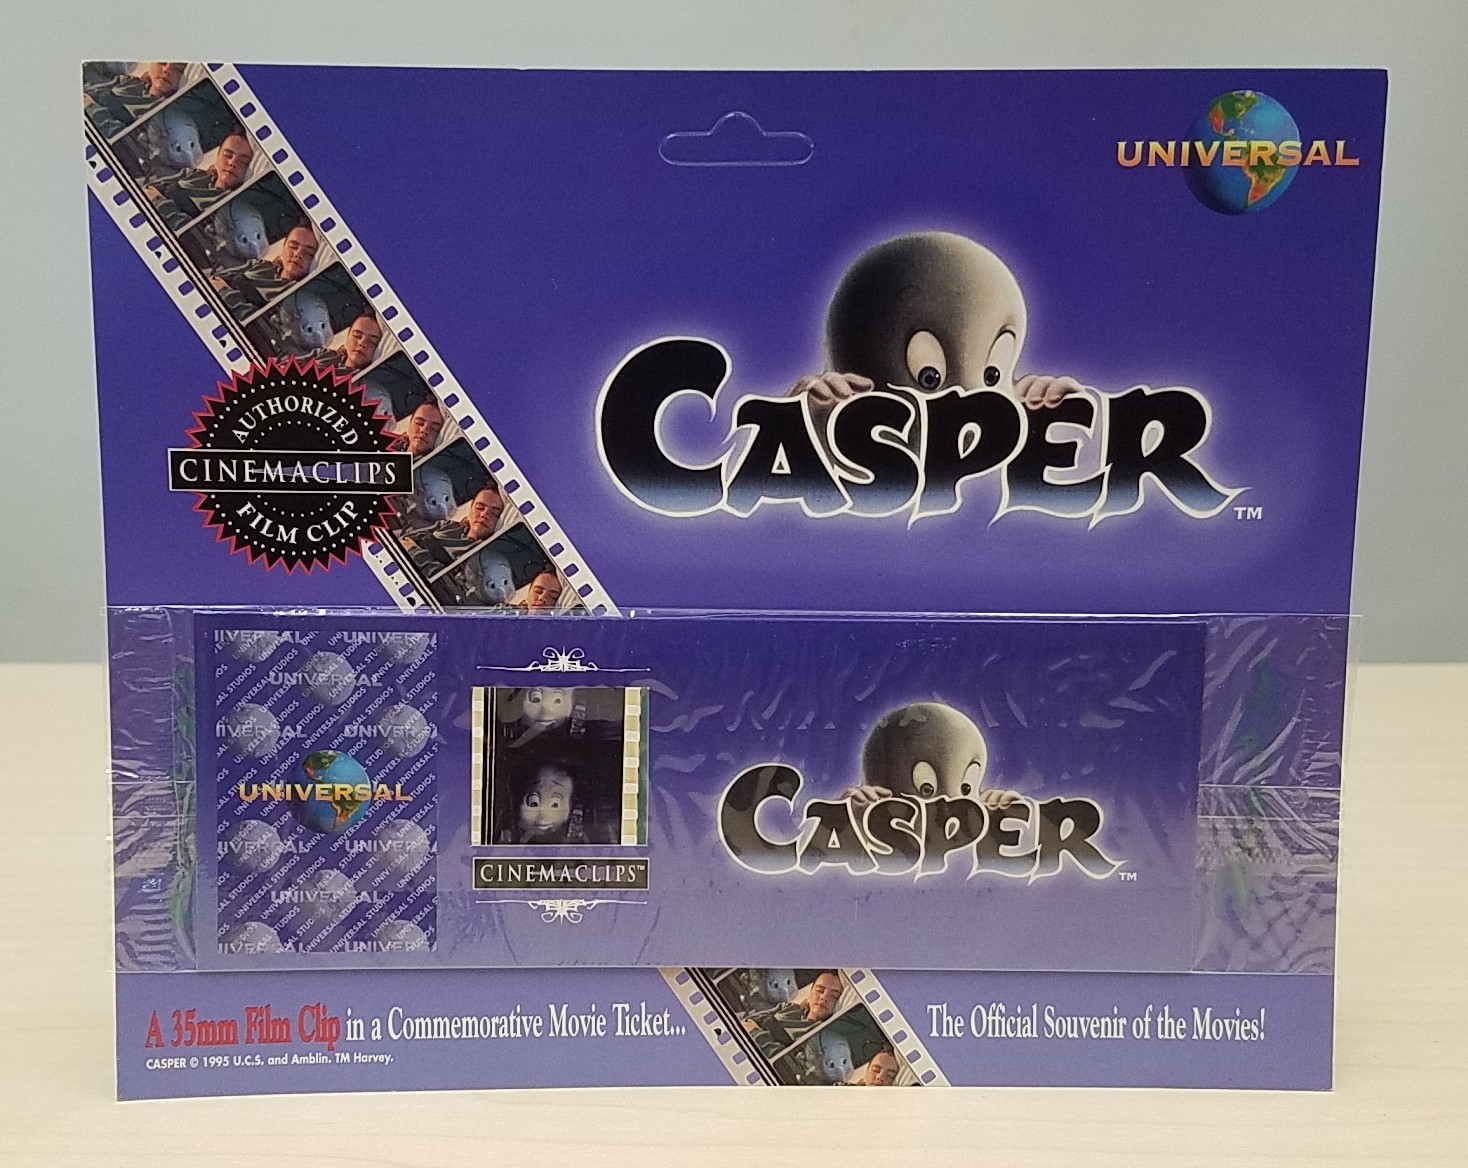 NEW 1995 Casper Cinemaclips 35mm Film Clip Movie Ticket